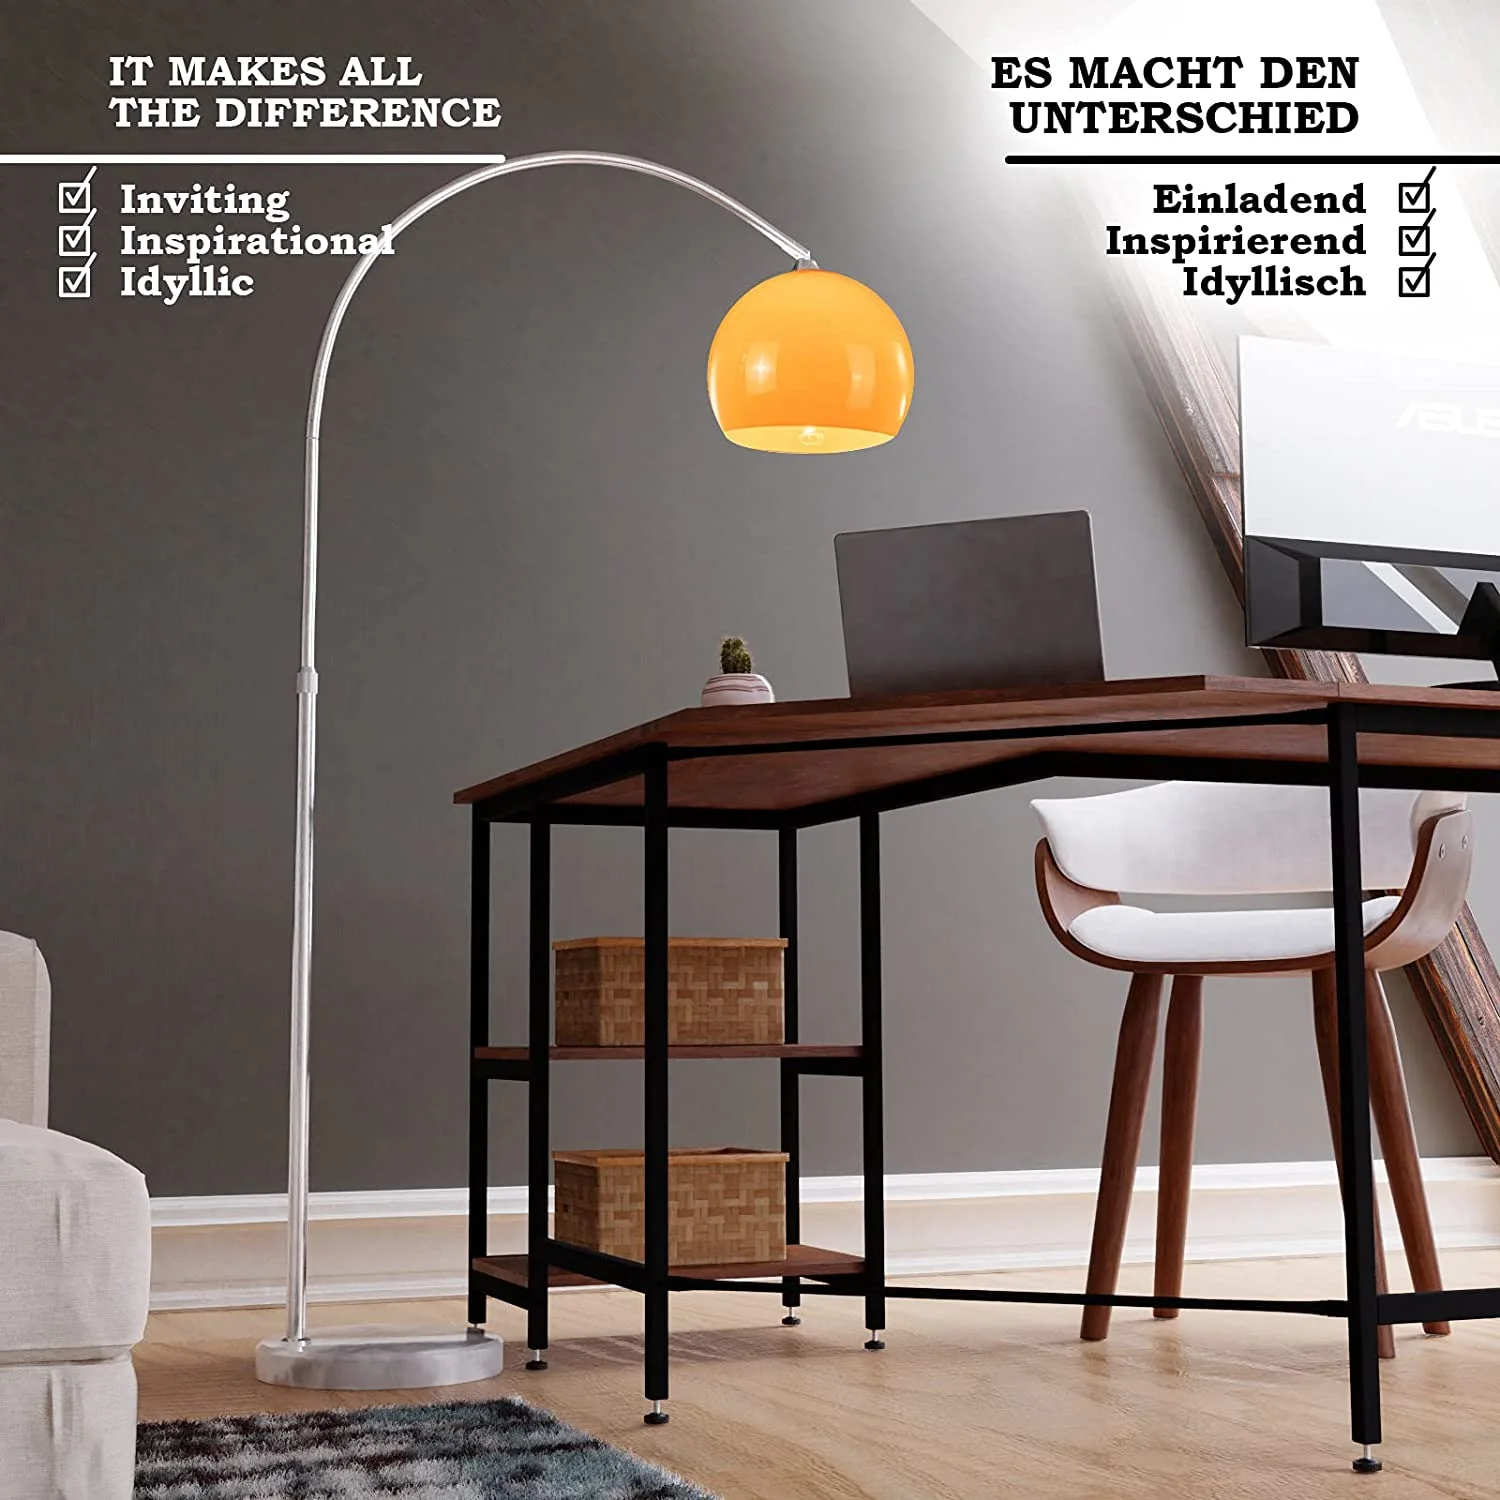 smeren Kosten oosters Lamp - Vloerlamp - Booglamp - 145/220 cm - E27 - 60W - Oranje - Trend24